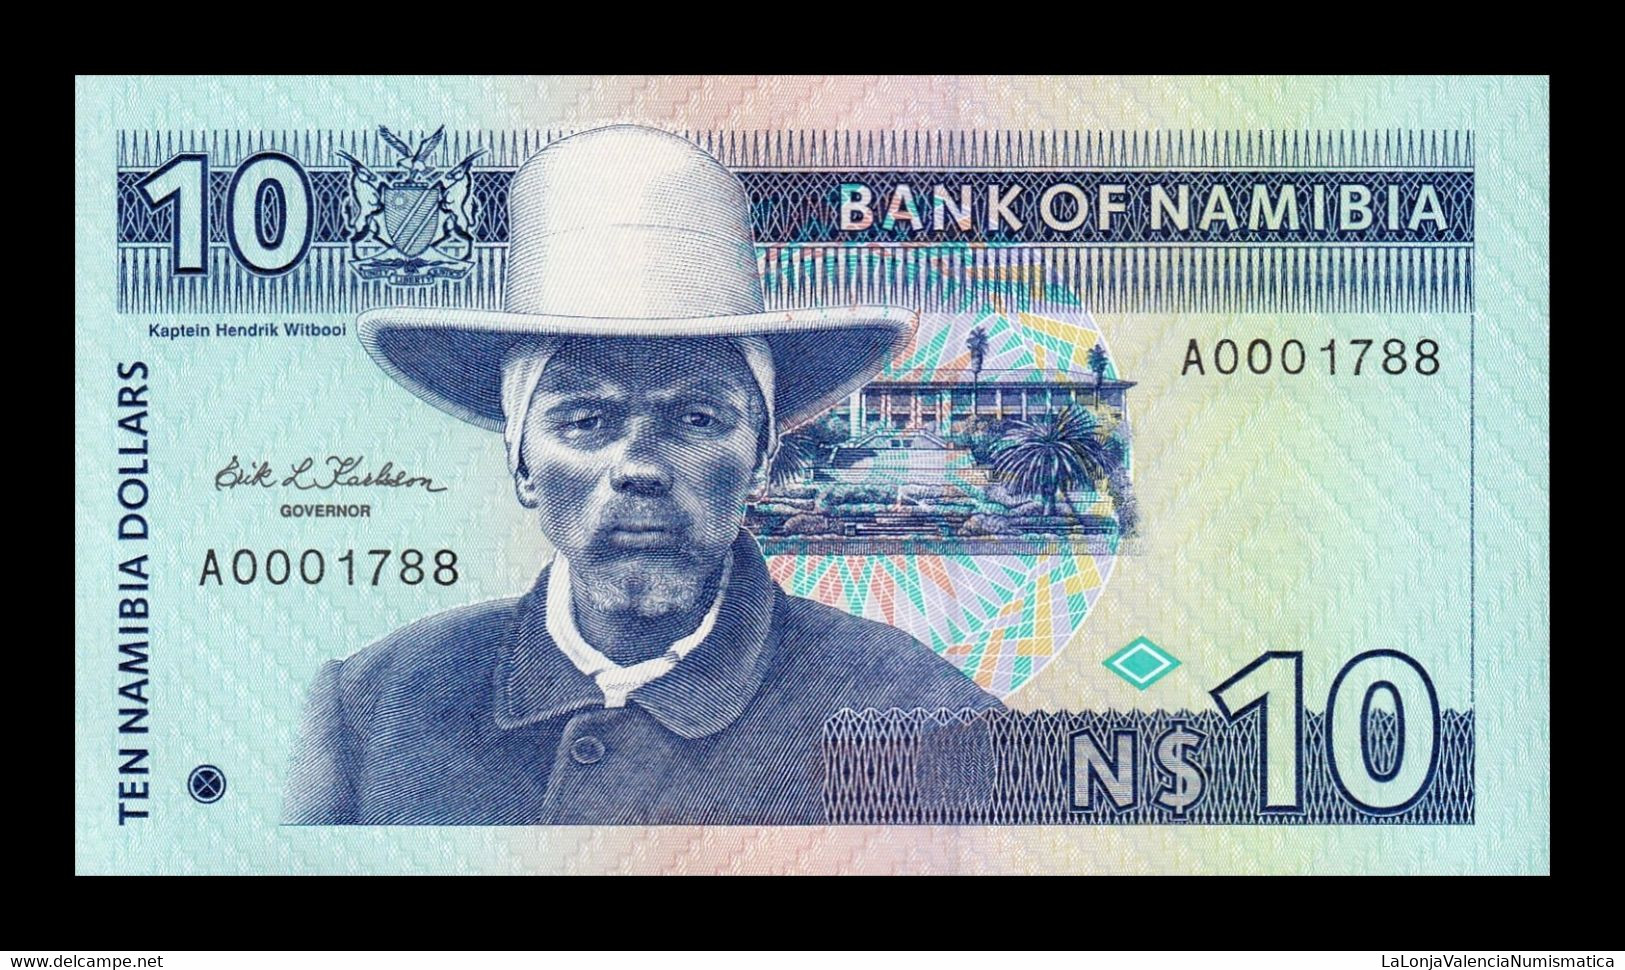 Namibia 10 Dollars 1993 Pick 1 Low Serial SC UNC - Namibia